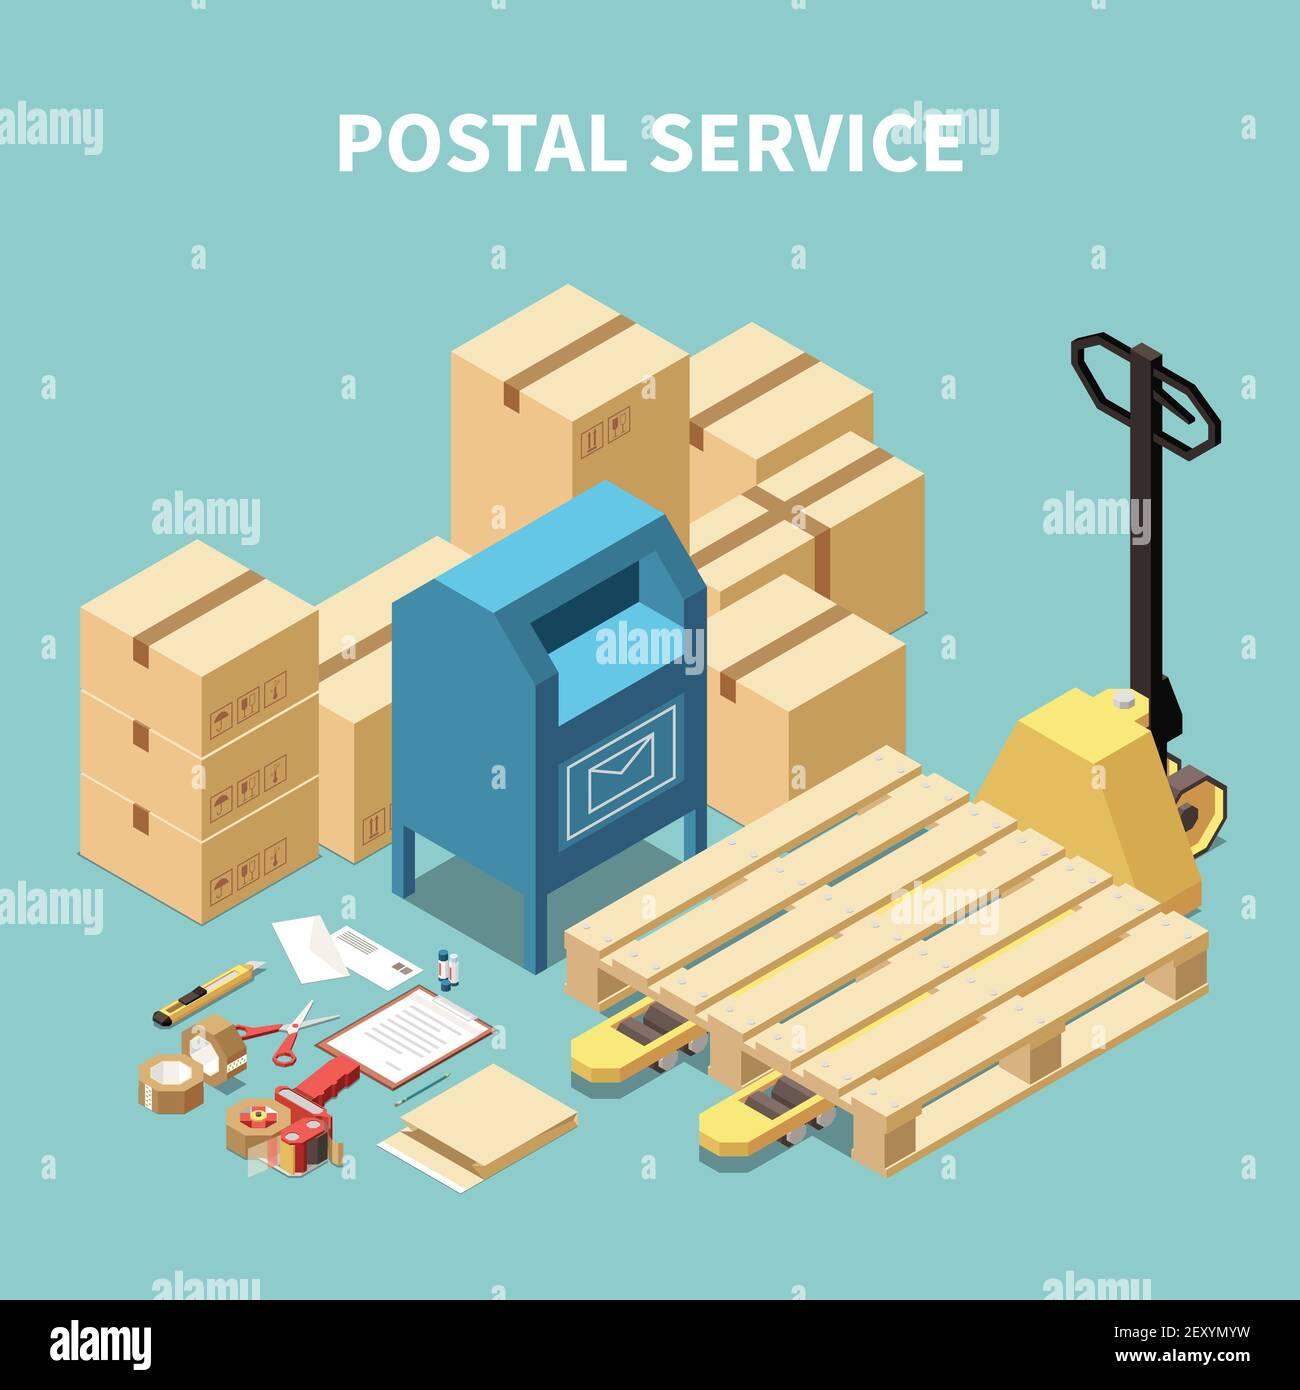 Postal Service isometrische Zusammensetzung mit Kartons und Schreibwaren Objekte Stock Vektor